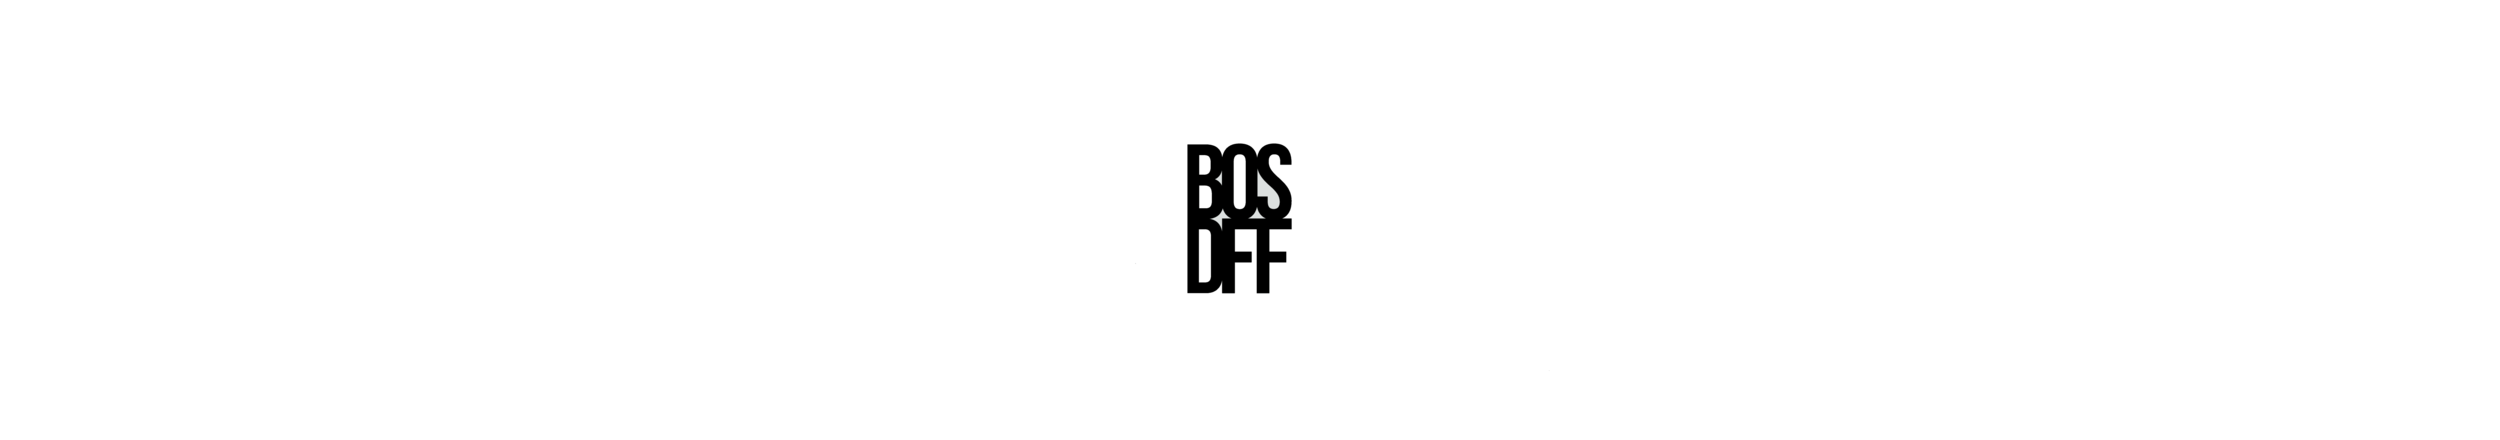 BOSTON DRONE FILM FESTIVAL